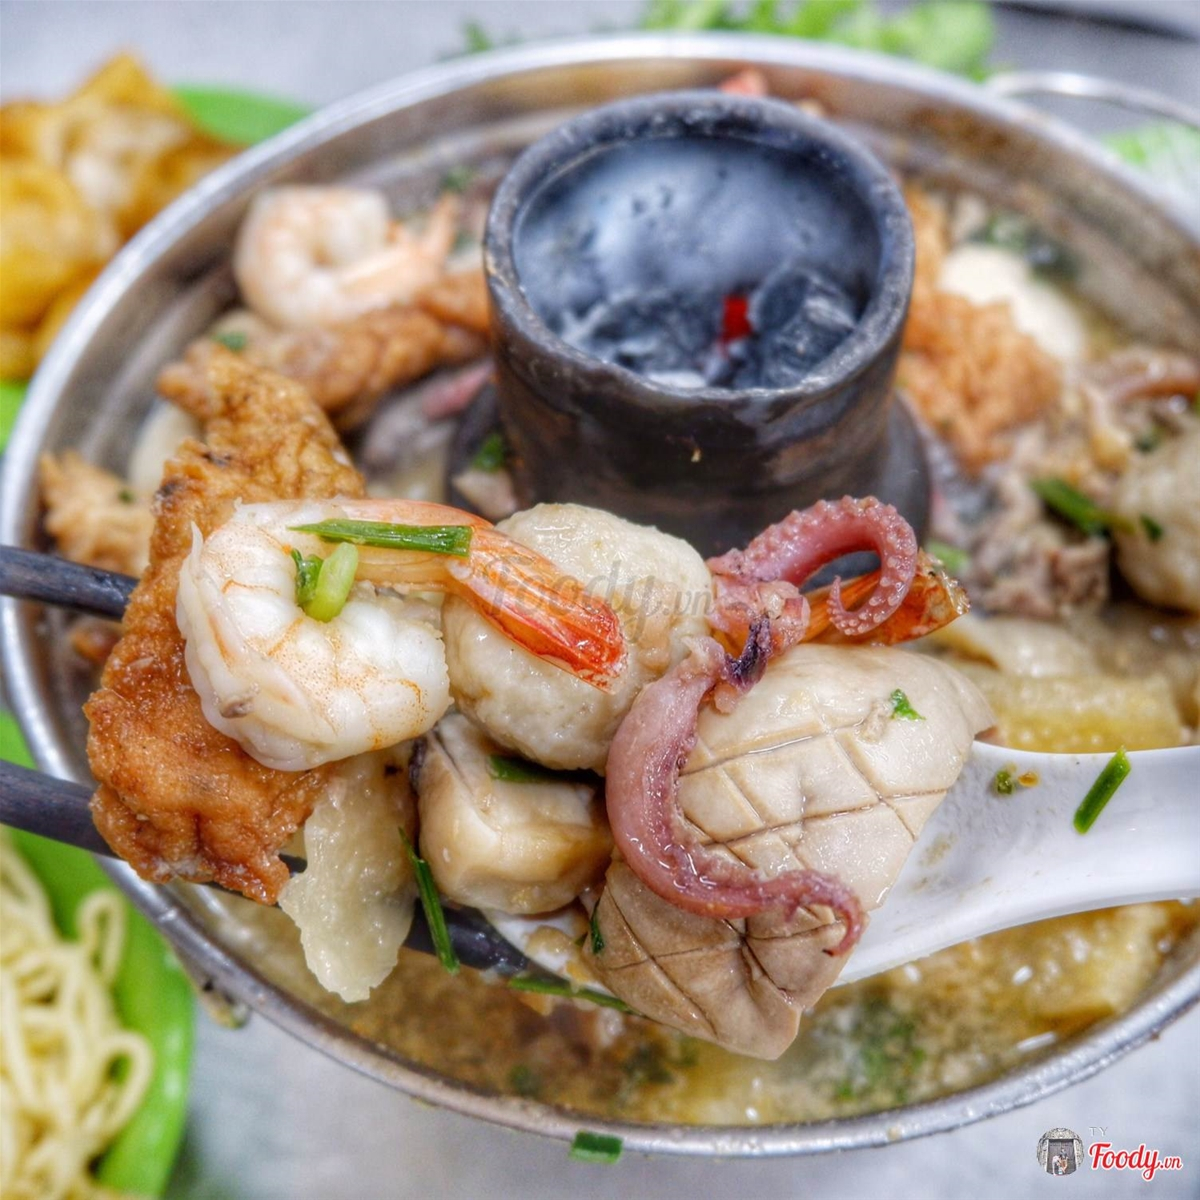 Lẩu tả pí lù có món gì đặc biệt tại Sài Gòn?